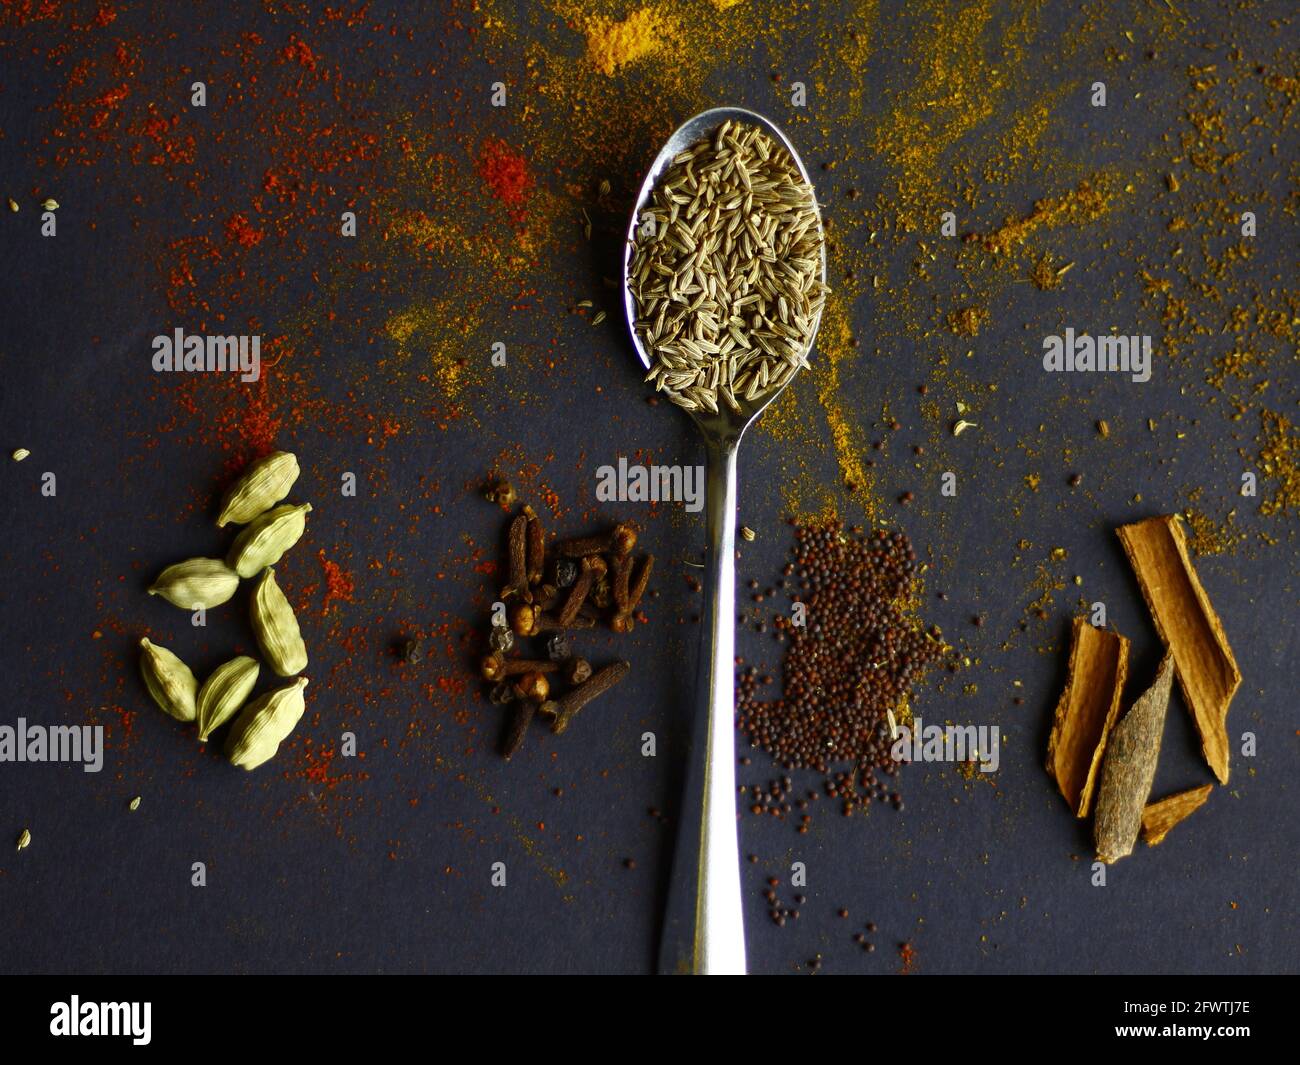 Épices indiennes, graines de cumin sur cuillère, graines de moutarde, cannelle, cardamon et clous de girofle sur fond sombre Banque D'Images